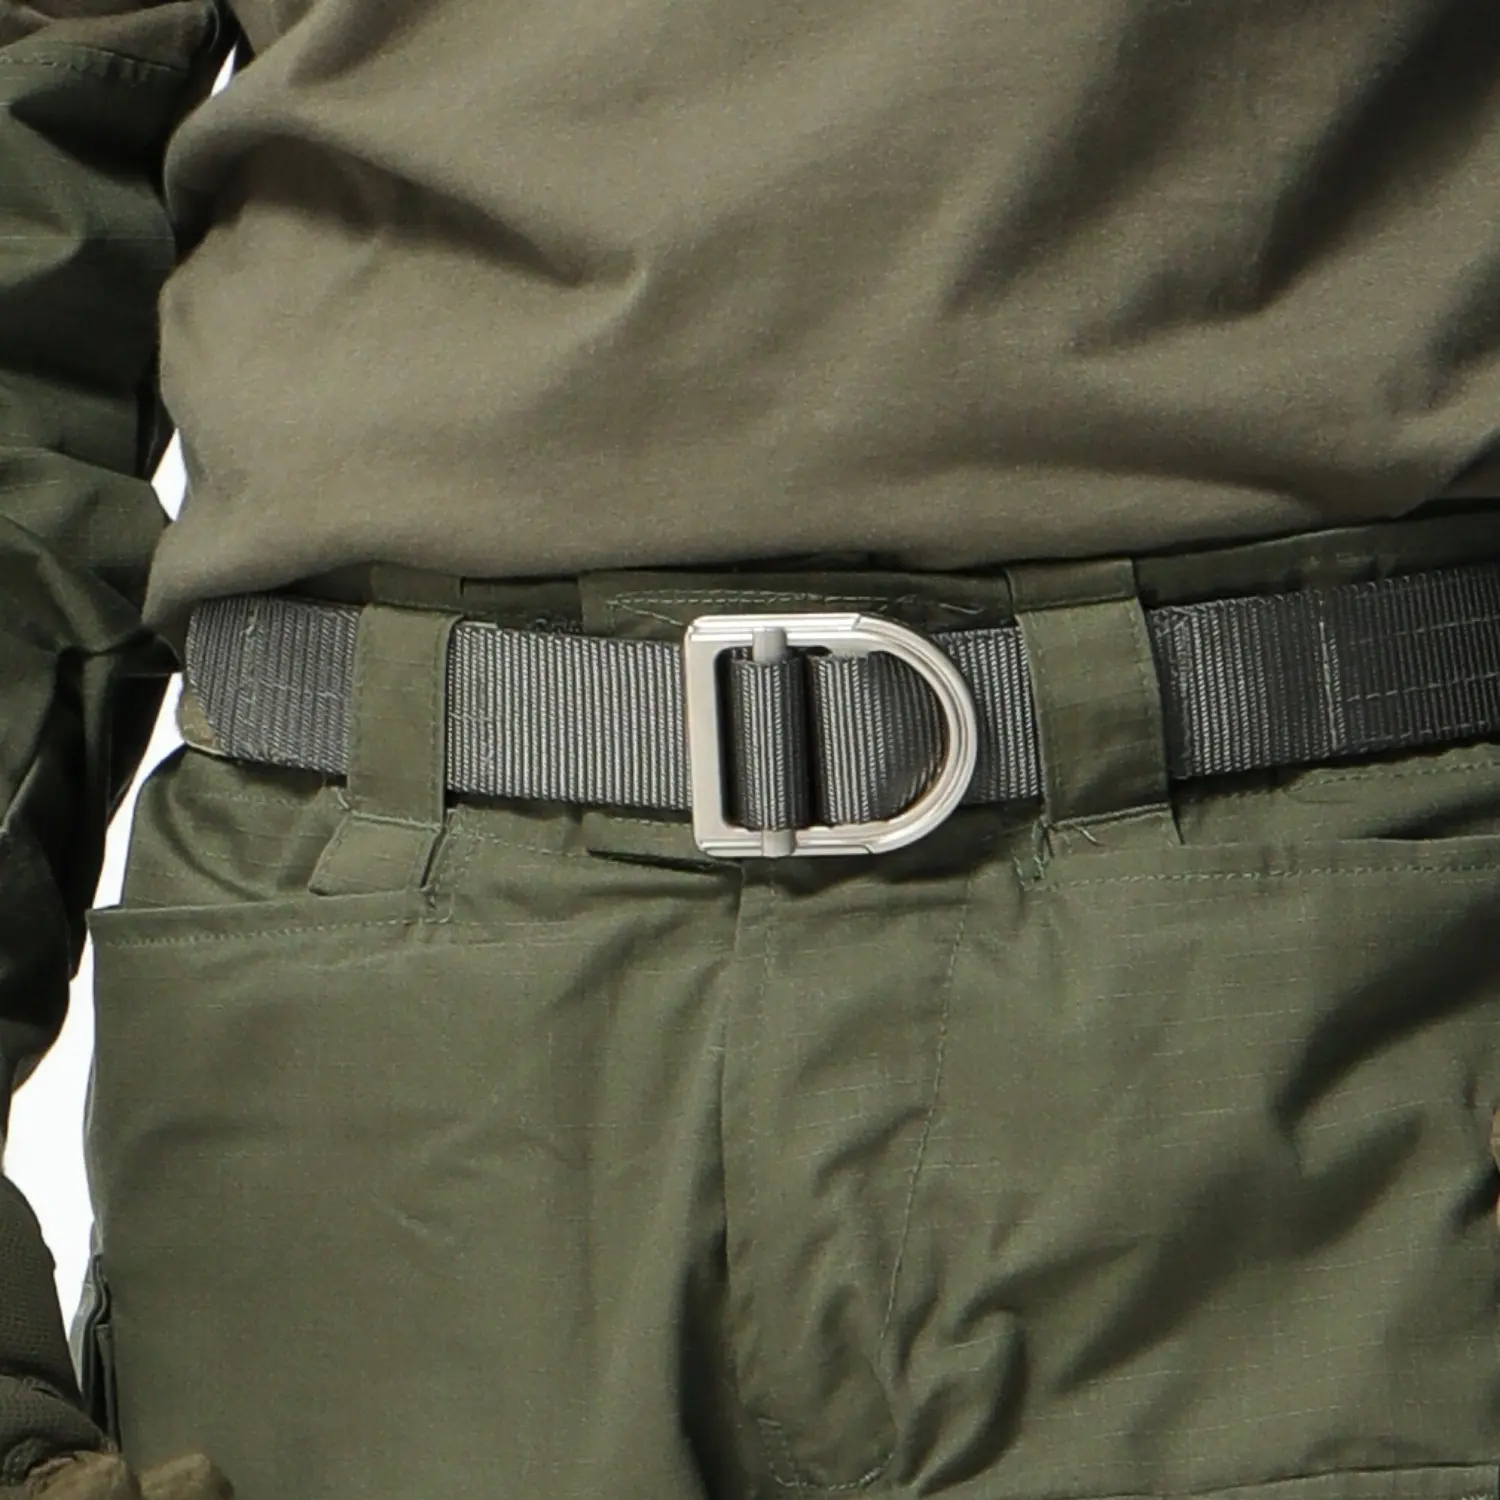 Ceintures en nylon extensible de 1.5 pouces pour pantalon ceinture de sangle randonnée chasse ceinture de devoir tactique